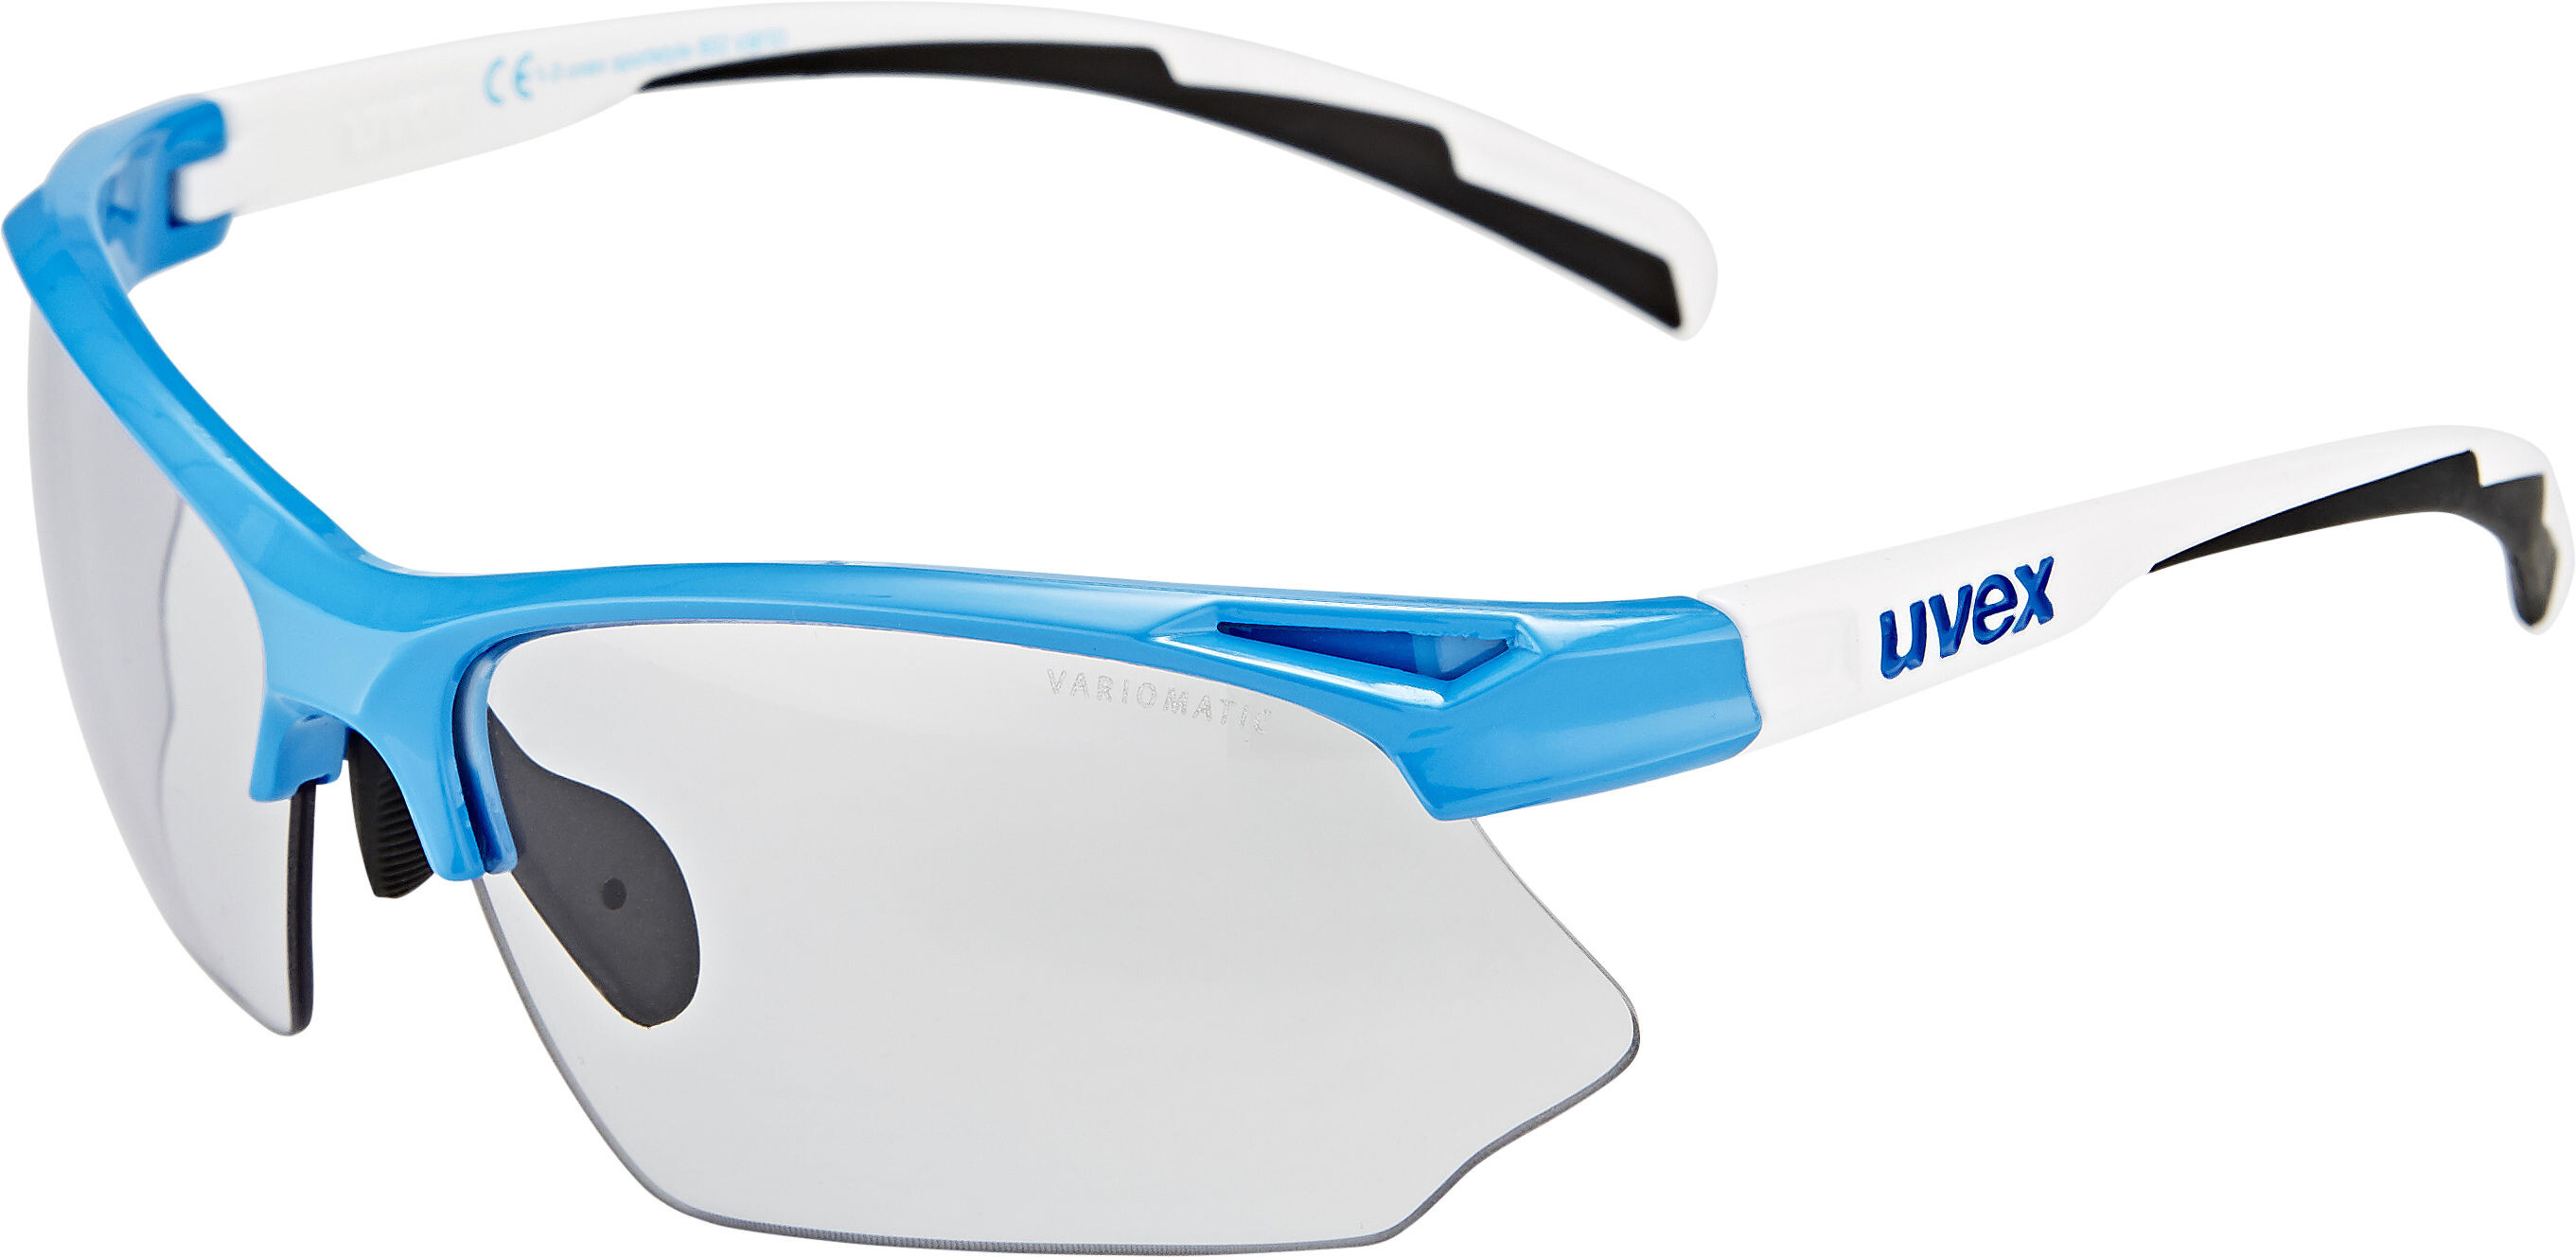 Uvex(ウベックス) sportstyle 802 調光レンズサングラス small v スポーツウェア・アクセサリー | xflame.com